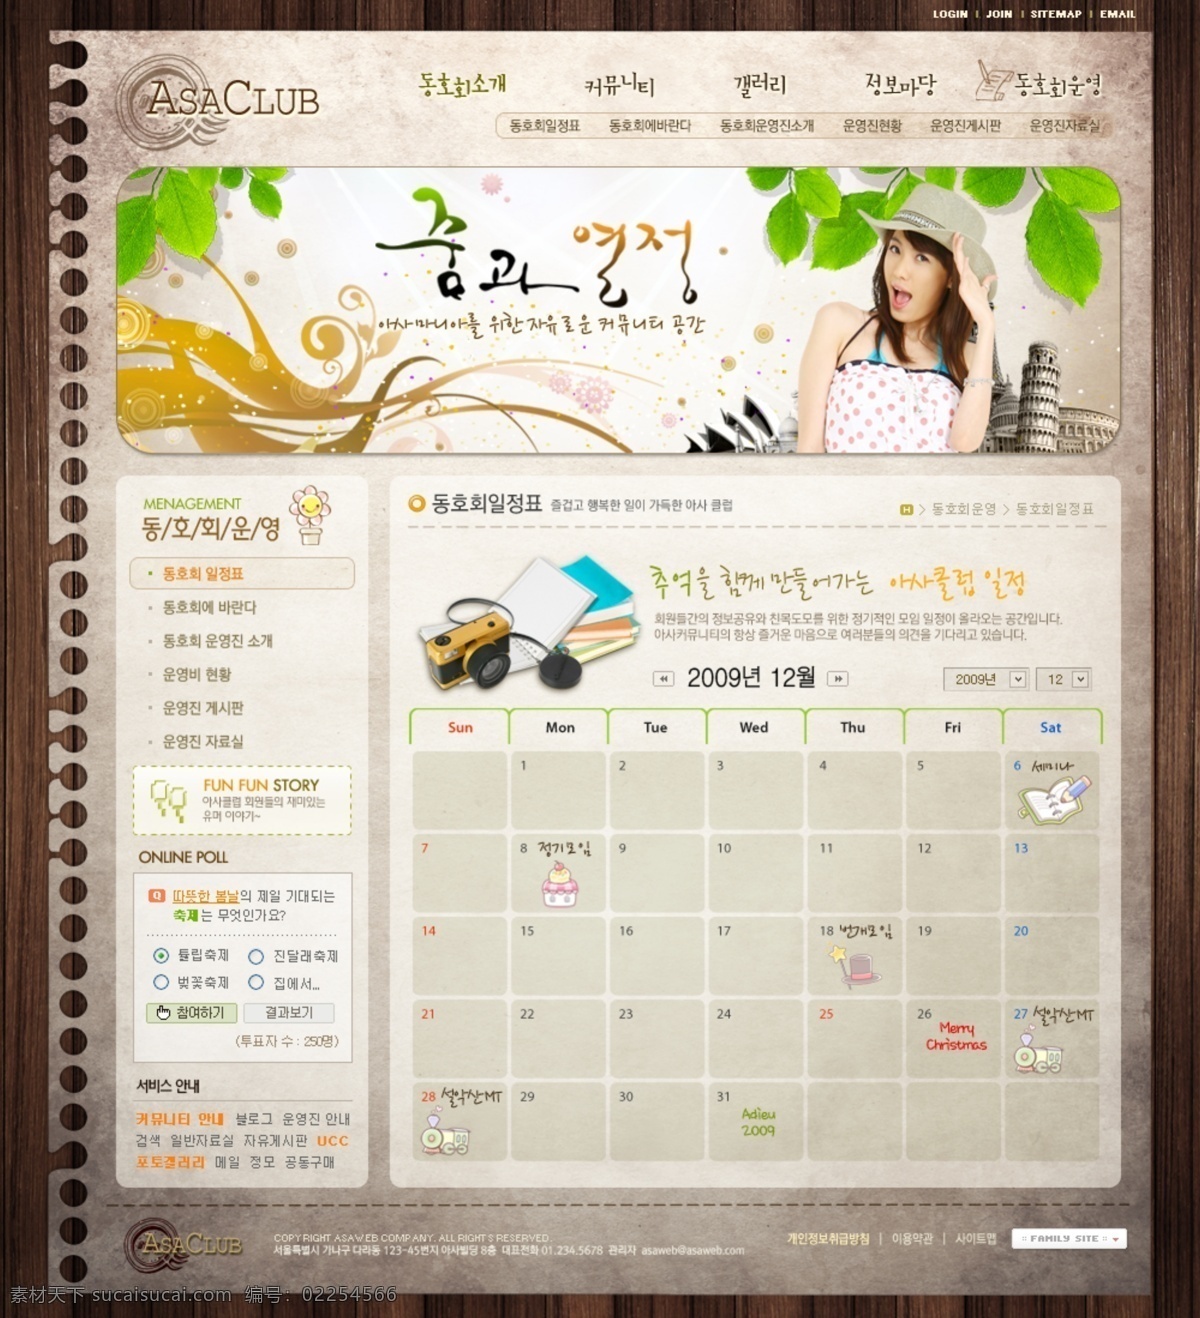 韩国 风格 网页设计 美女 网页 psd图 psd源文件